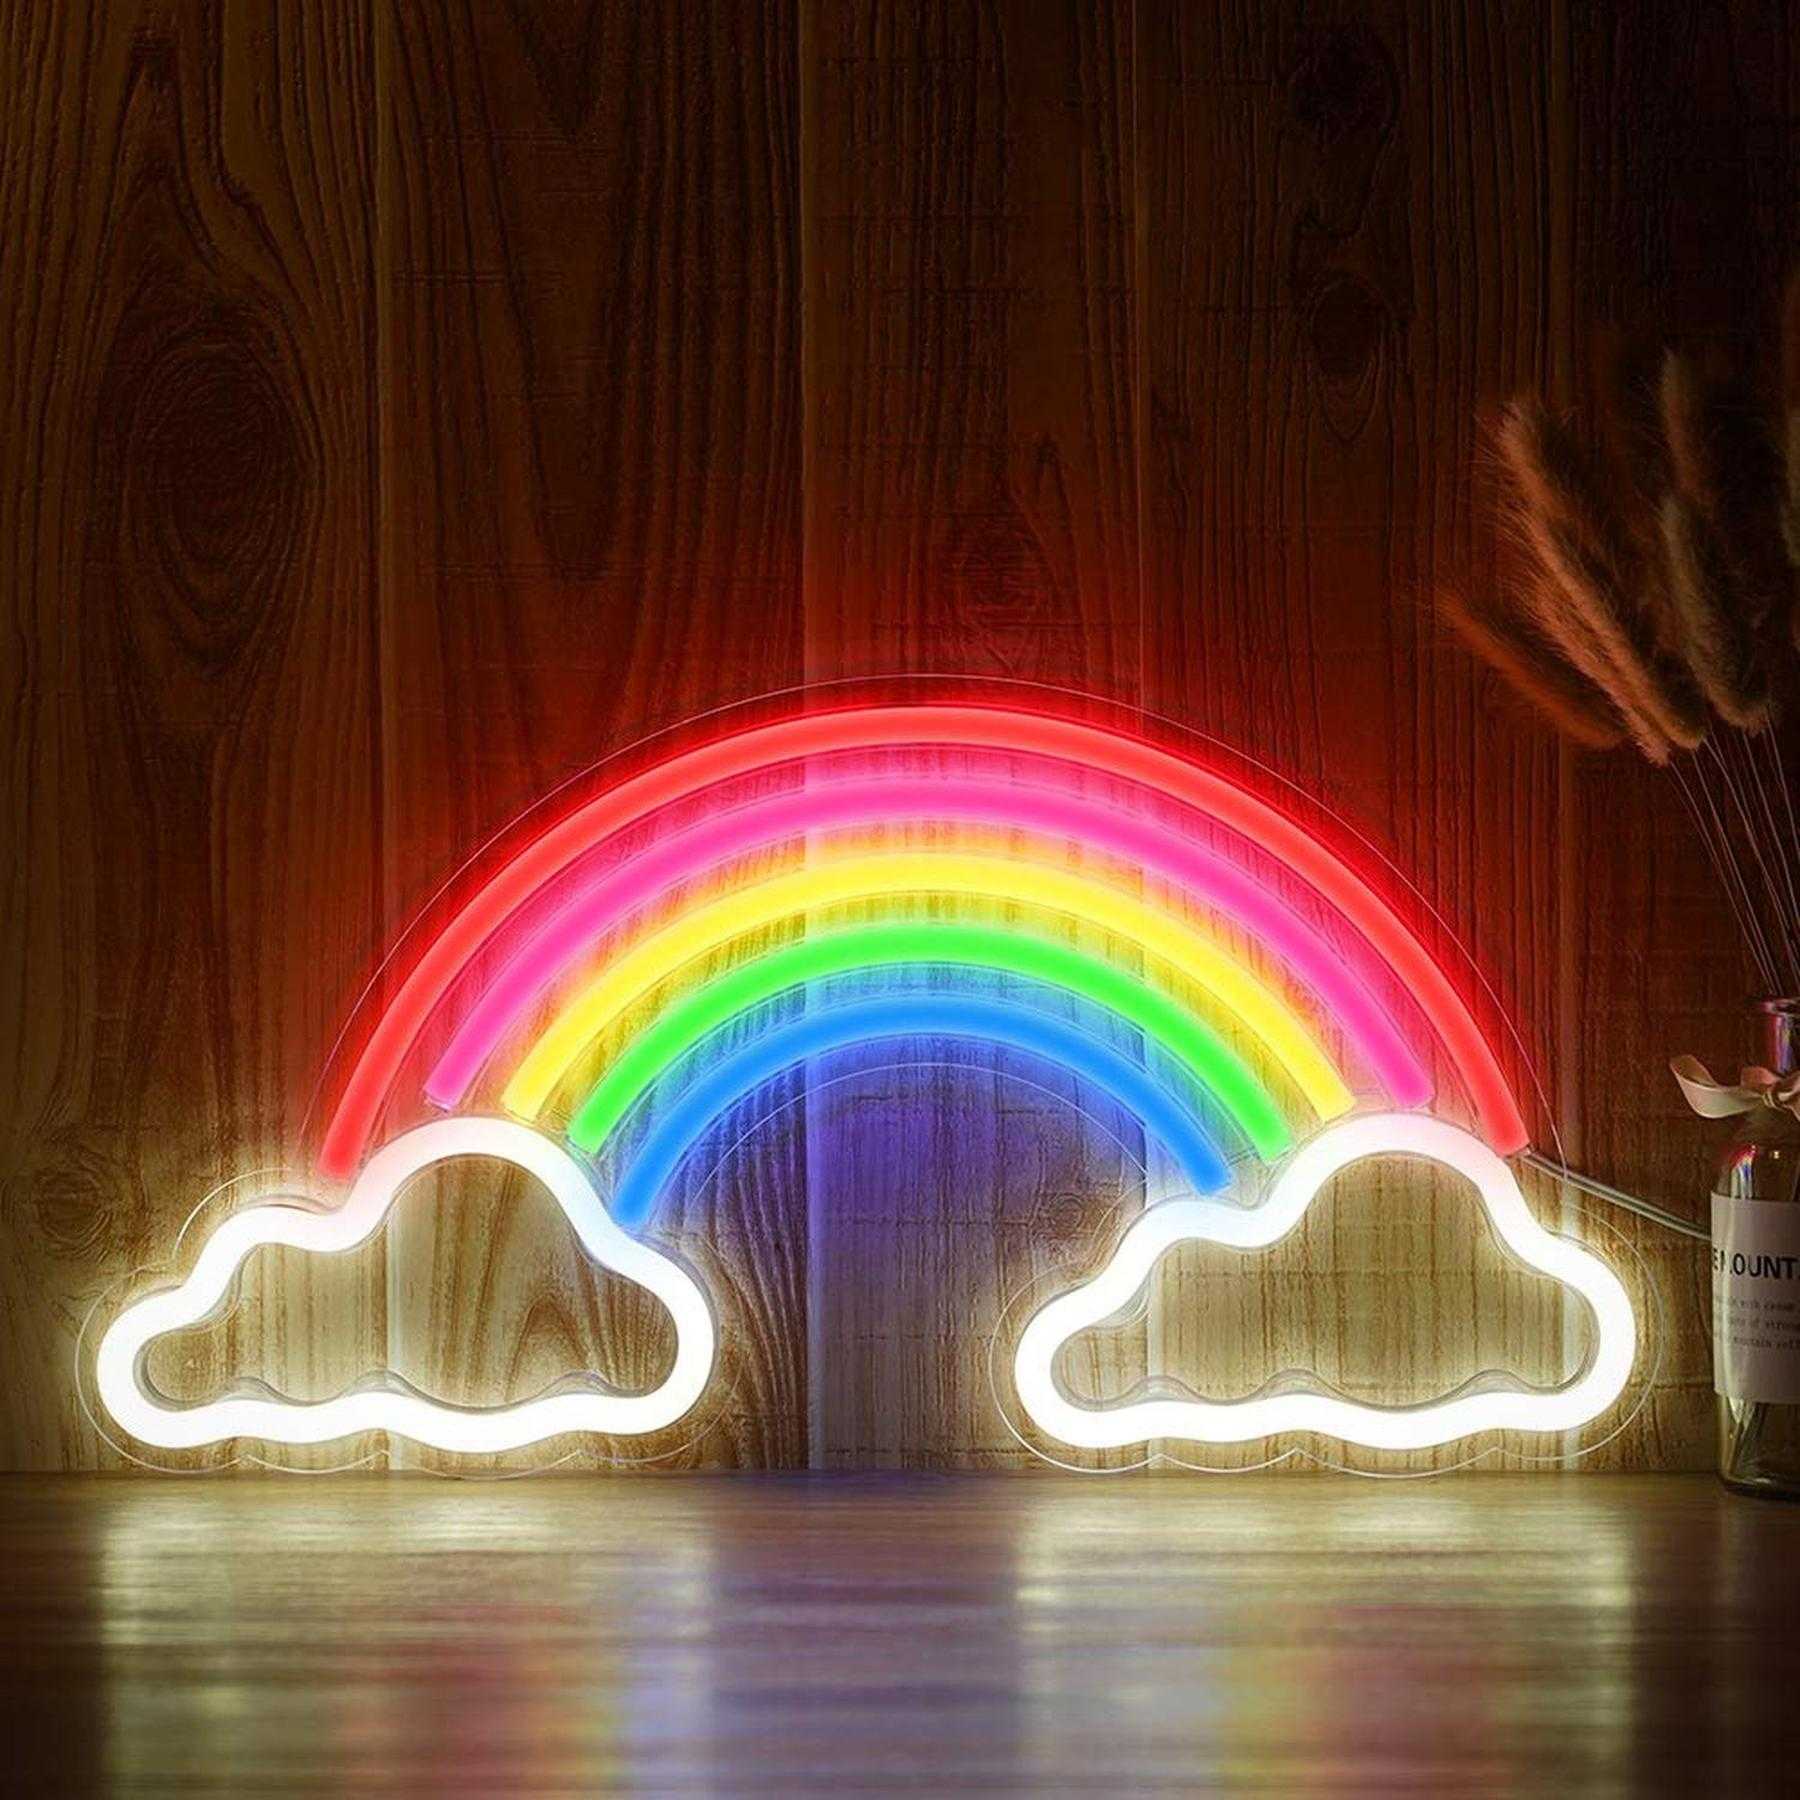 NEON LED Licht, dekorative Wand-Leuchte, Regenbogen auf zwei Wolken